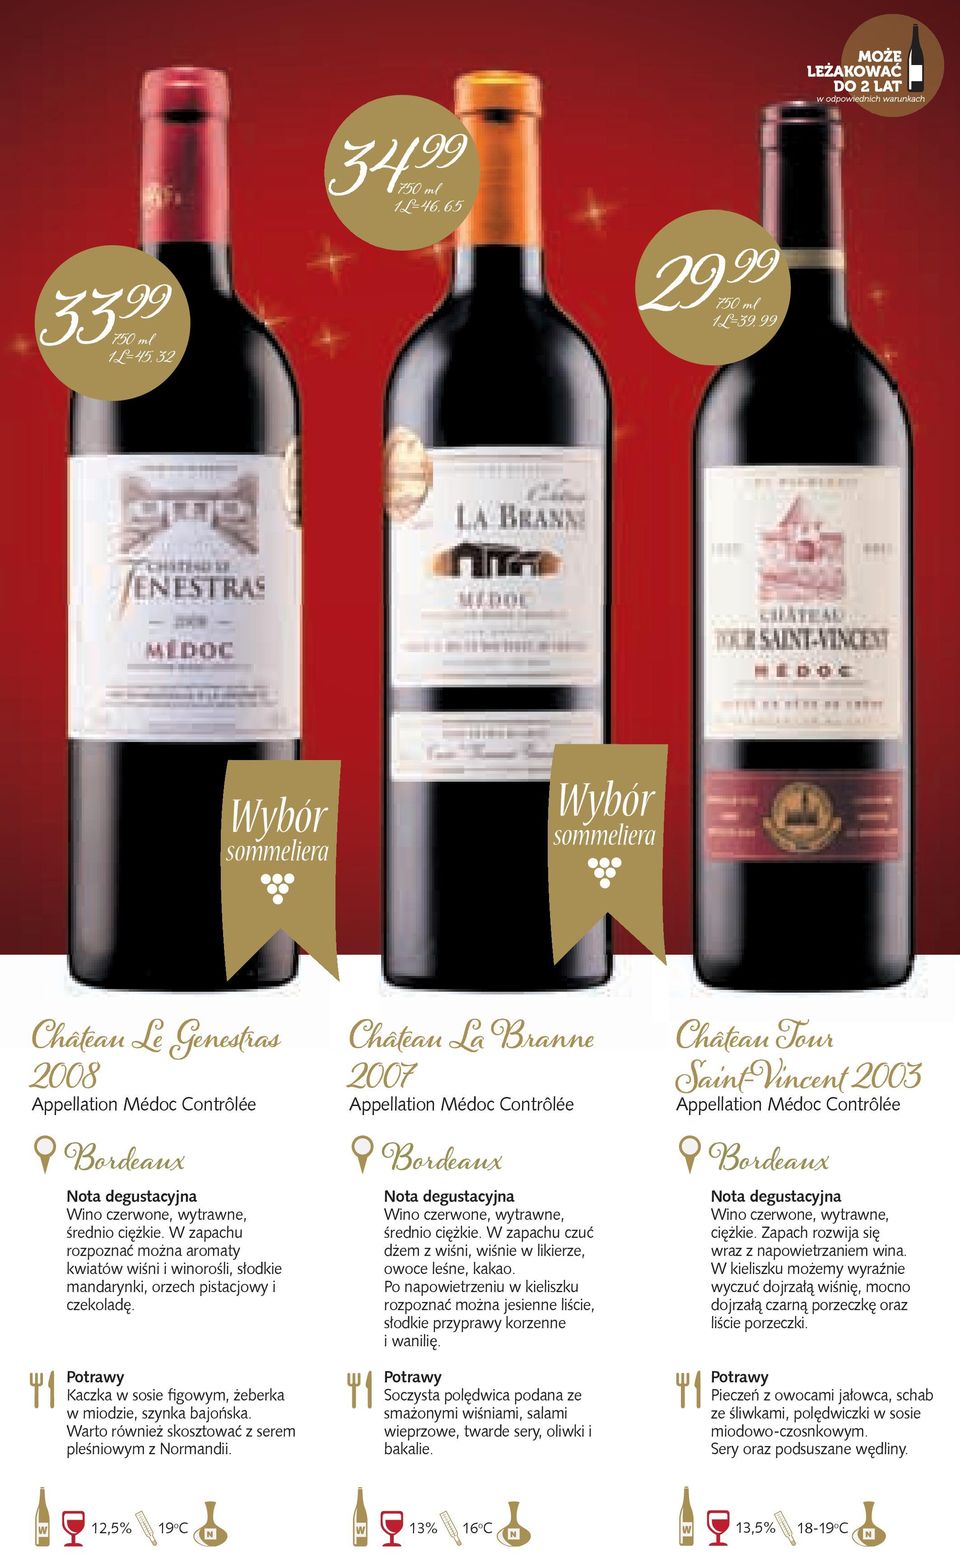 Warto również skosztować z serem pleśniowym z Normandii. Château La Branne 2007 Appellation Médoc Contrôlée Wino czerwone, wytrawne, średnio ciężkie.